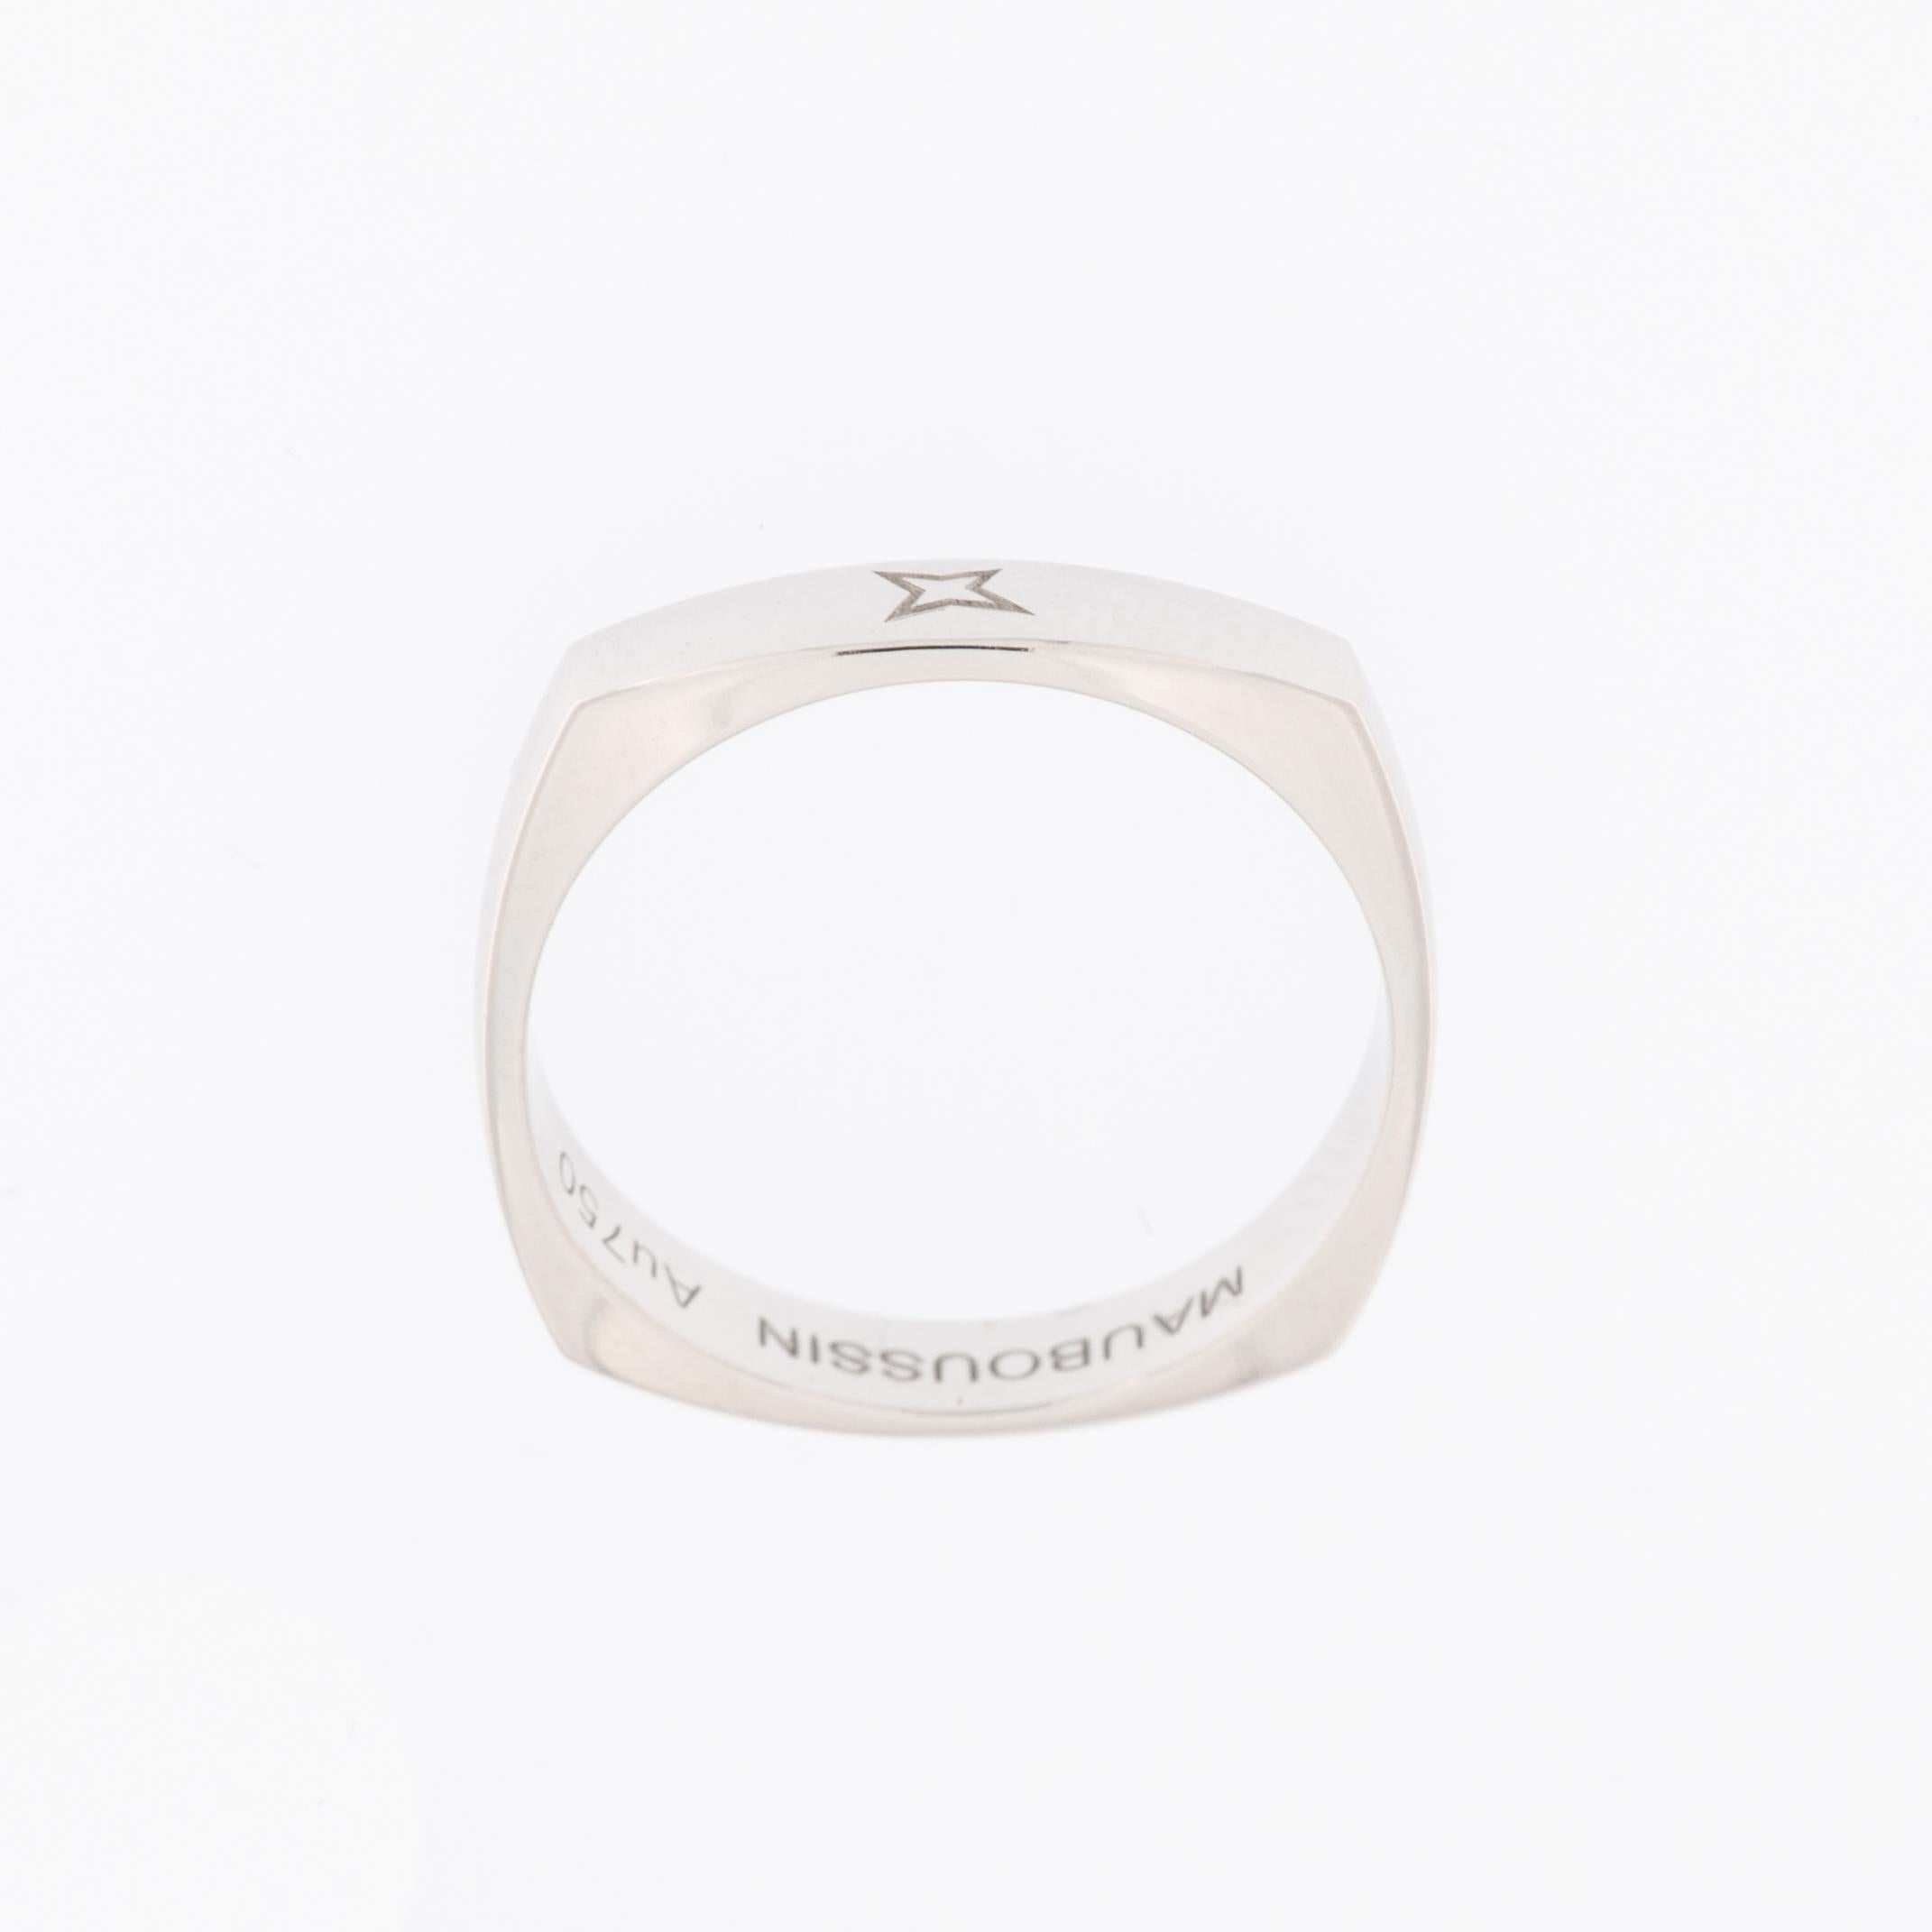 Der Mauboussin Ring aus 18 Karat Weißgold ist ein Symbol für raffinierten Luxus und zeitlose Eleganz. Dieser Ring des angesehenen französischen Juwelierhauses Mauboussin ist eine nahtlose Mischung aus exquisitem Design und höchster